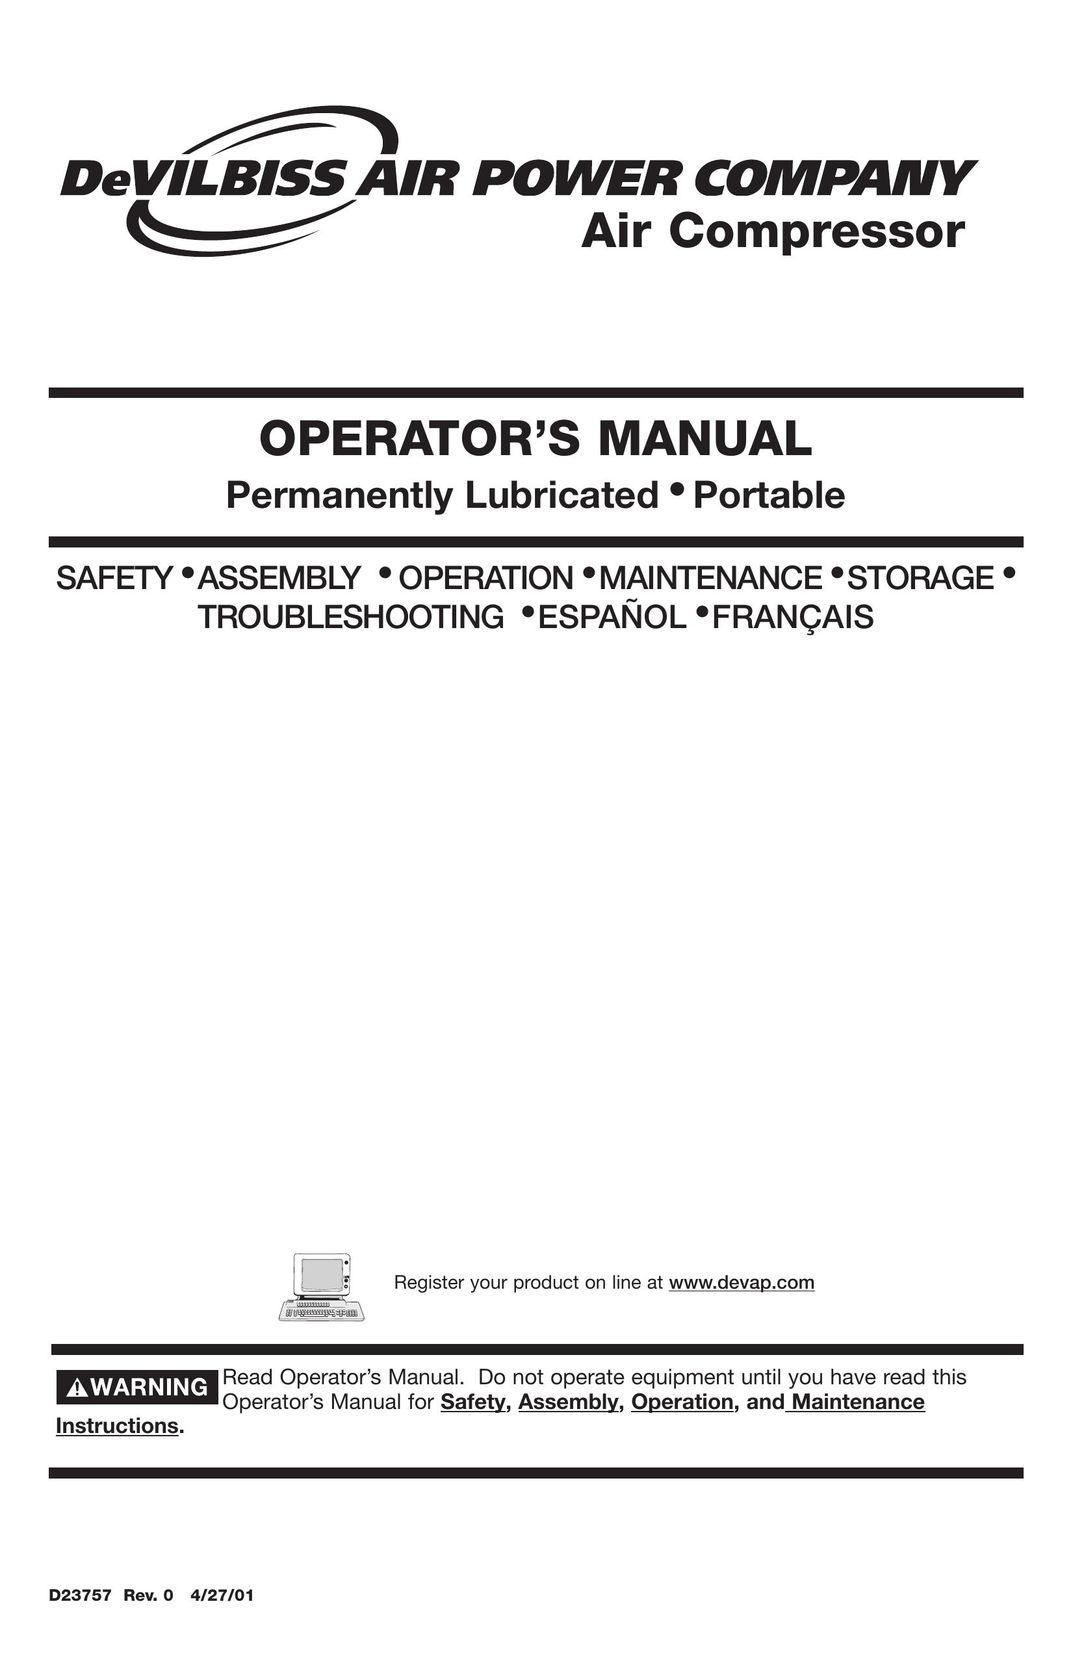 DeVillbiss Air Power Company D23757 Air Compressor User Manual